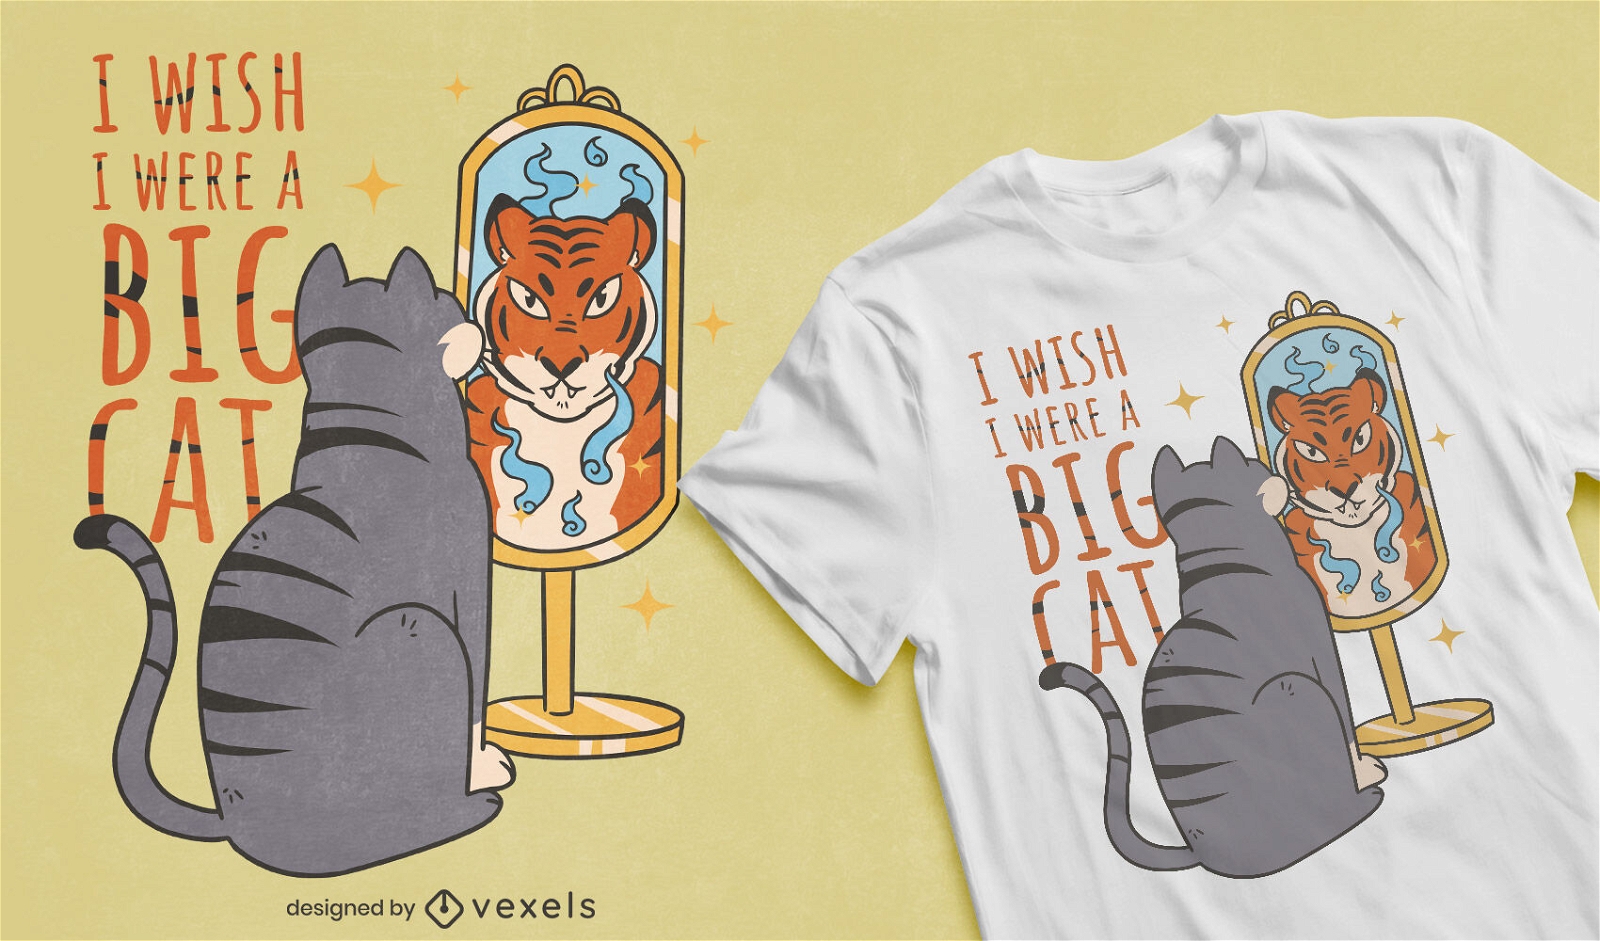 Cat self-esteem t-shirt design